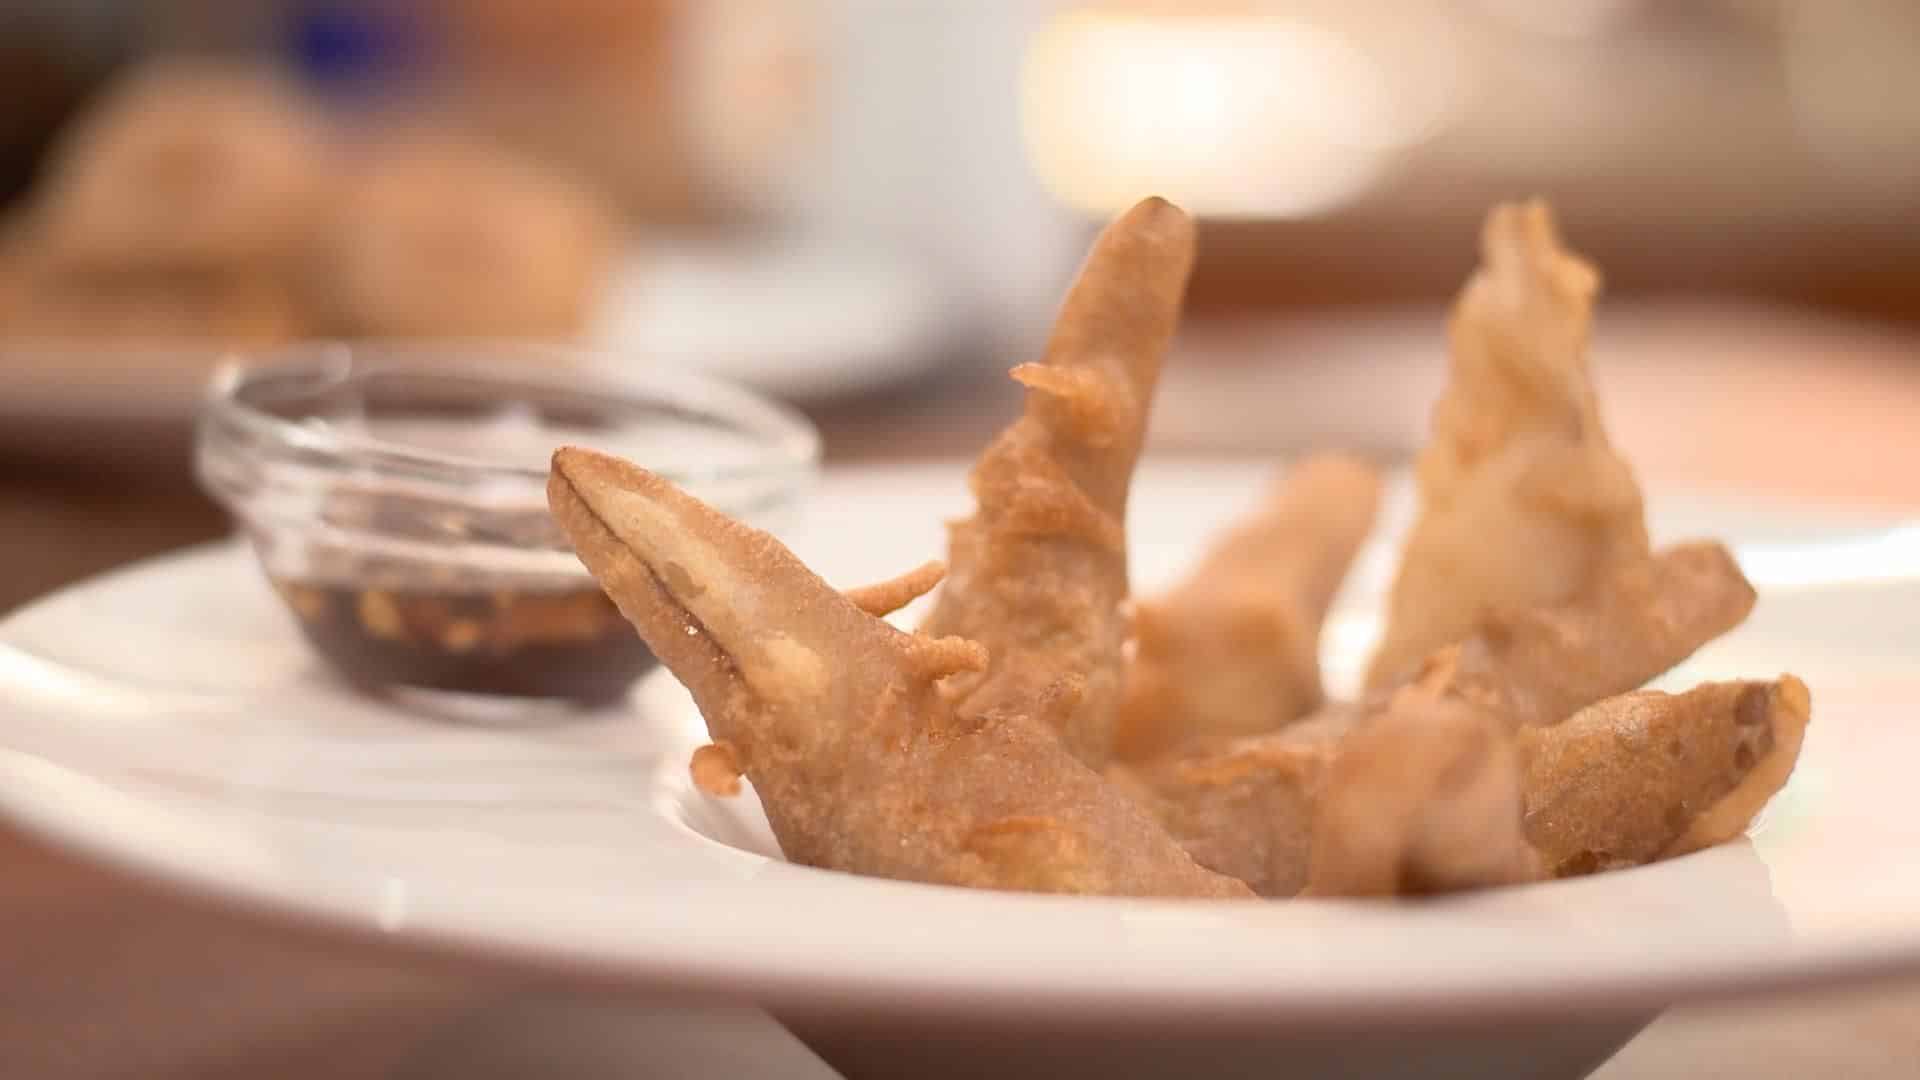 מגישים את האגסים בליווי הרוטב התאילנדי כחטיף בתחילת ארוחה או עם רוטב מייפל כקינוח